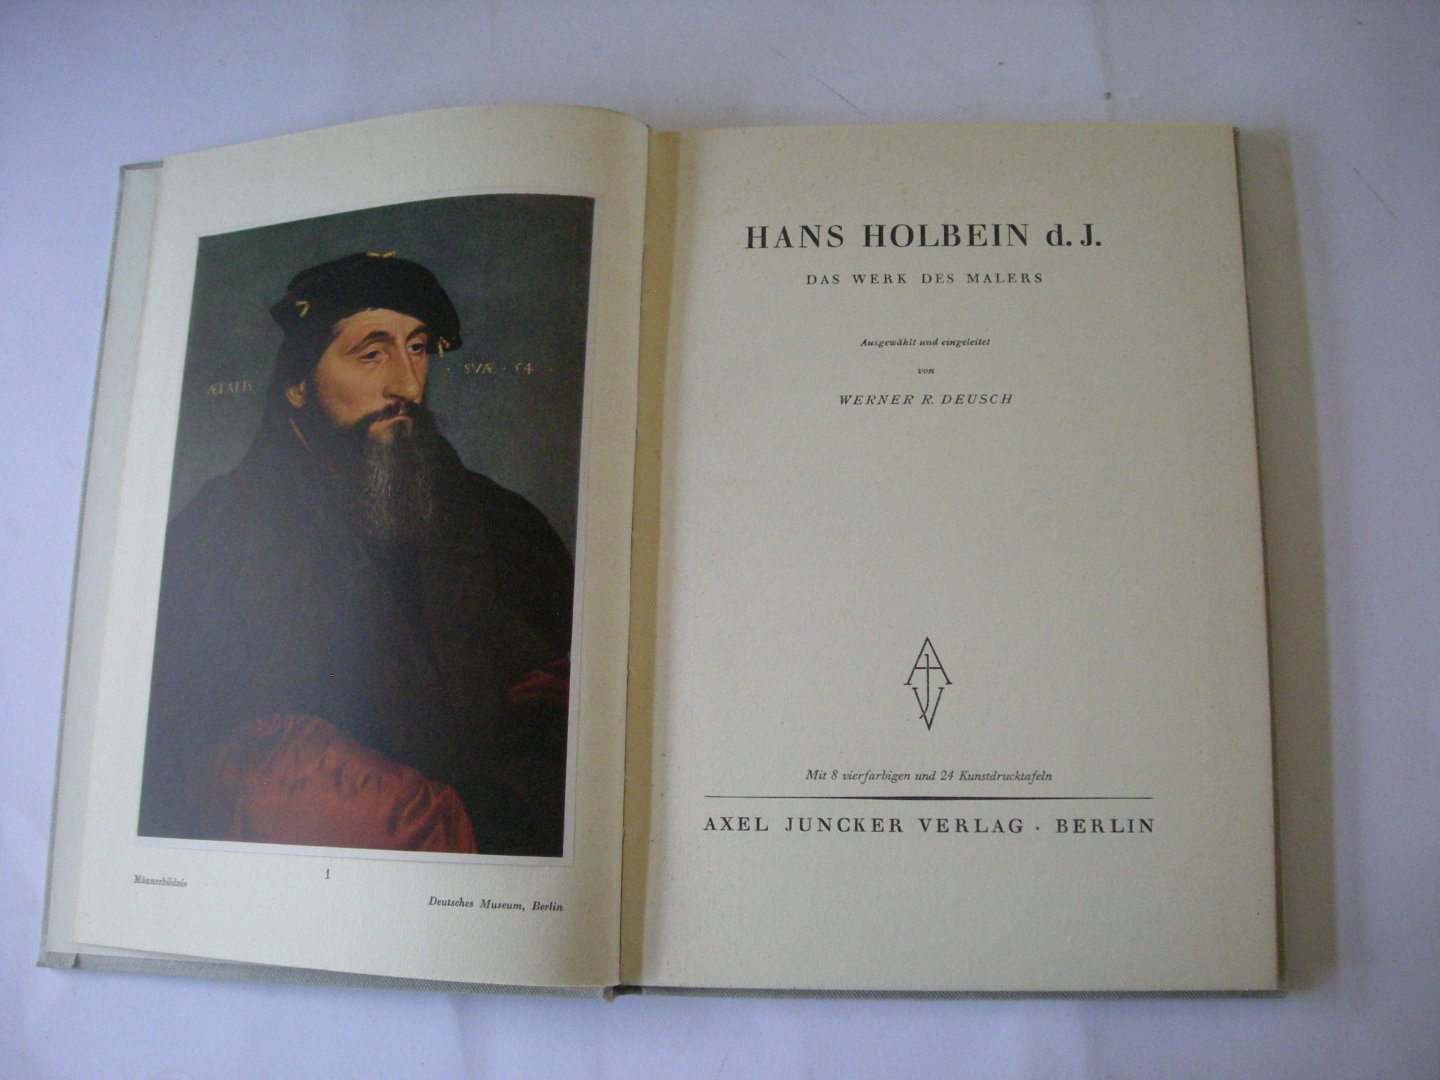 Deusch, Werner R., ausgewahlt und eingel. - Hans Holbein d.J. - Das Werk des Malers